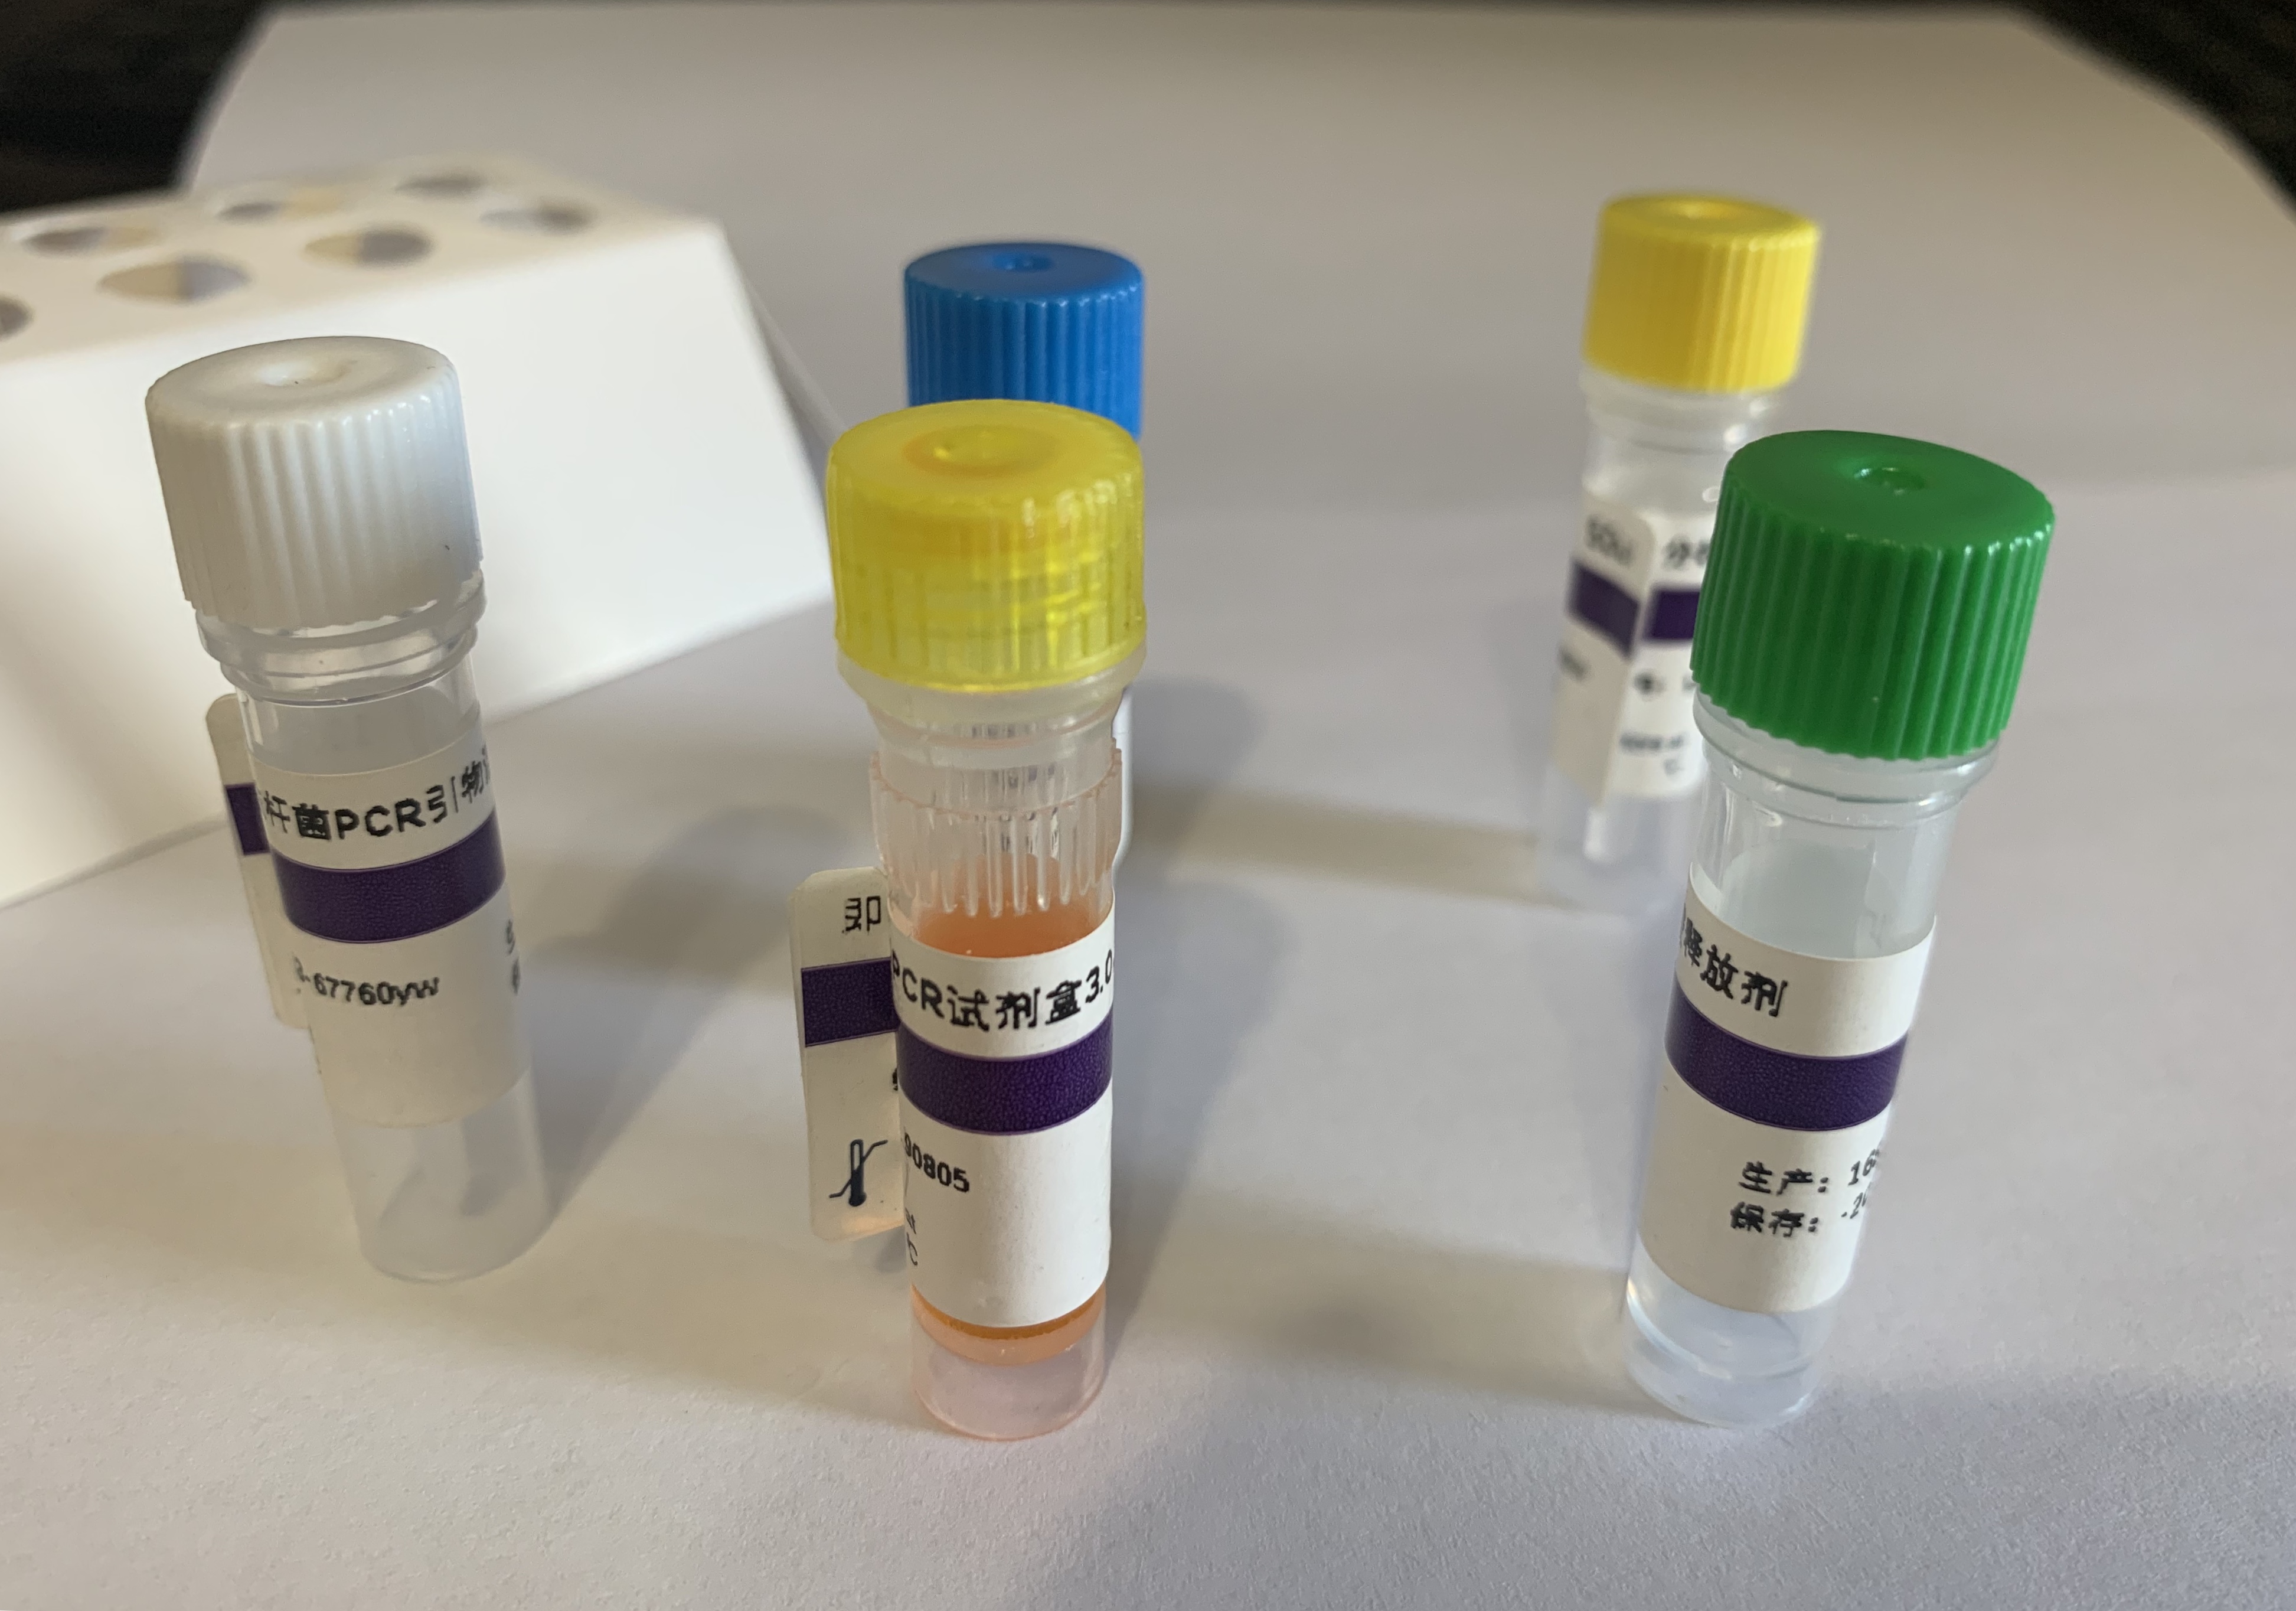 苹果褪绿叶斑病毒RT-PCR试剂盒